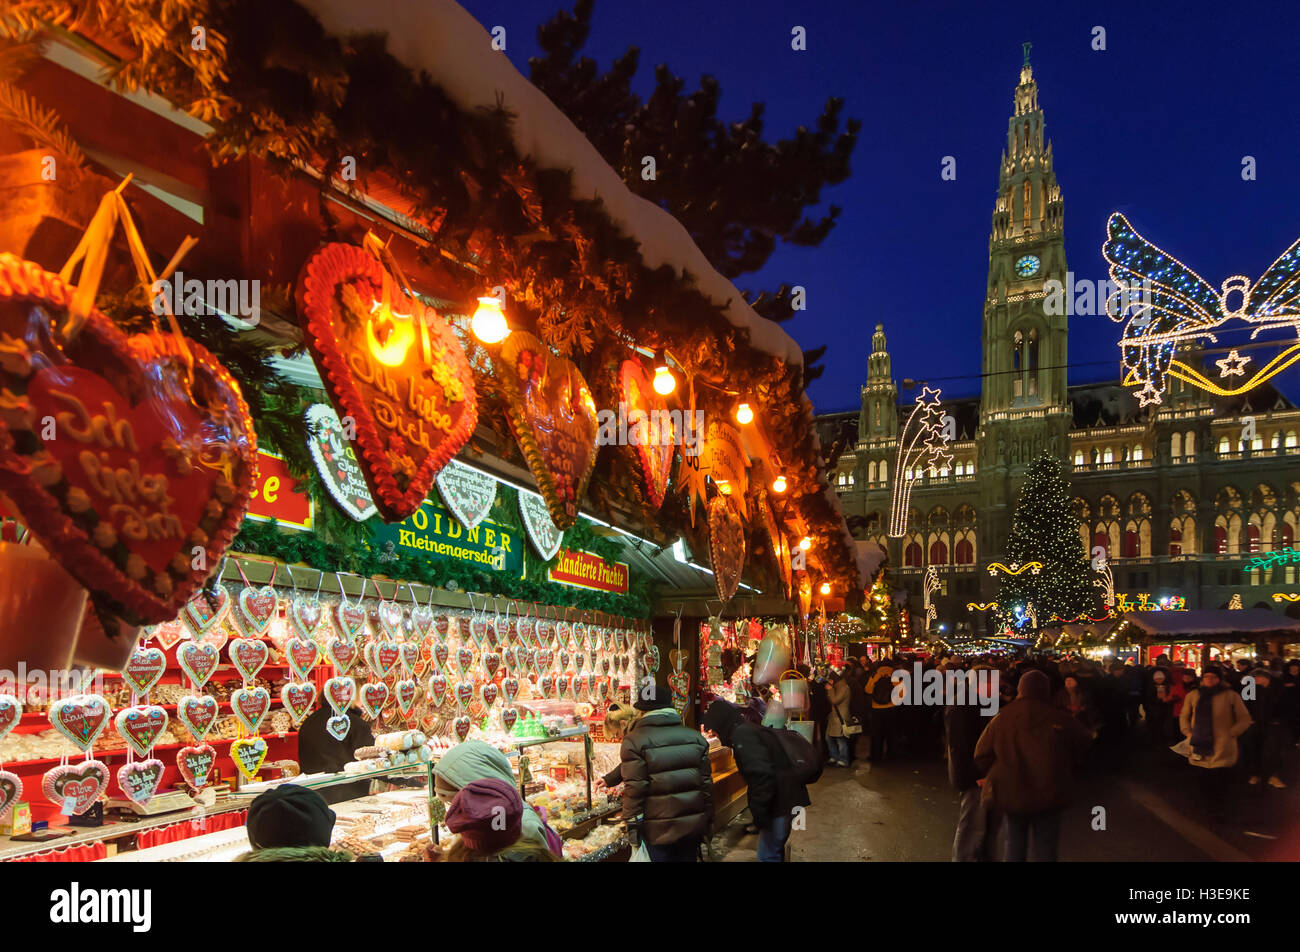 Wien, Wien: Weihnachtsmarkt "Christkindlmarkt", Rathaus, 01., Wien,  Österreich Stockfotografie - Alamy